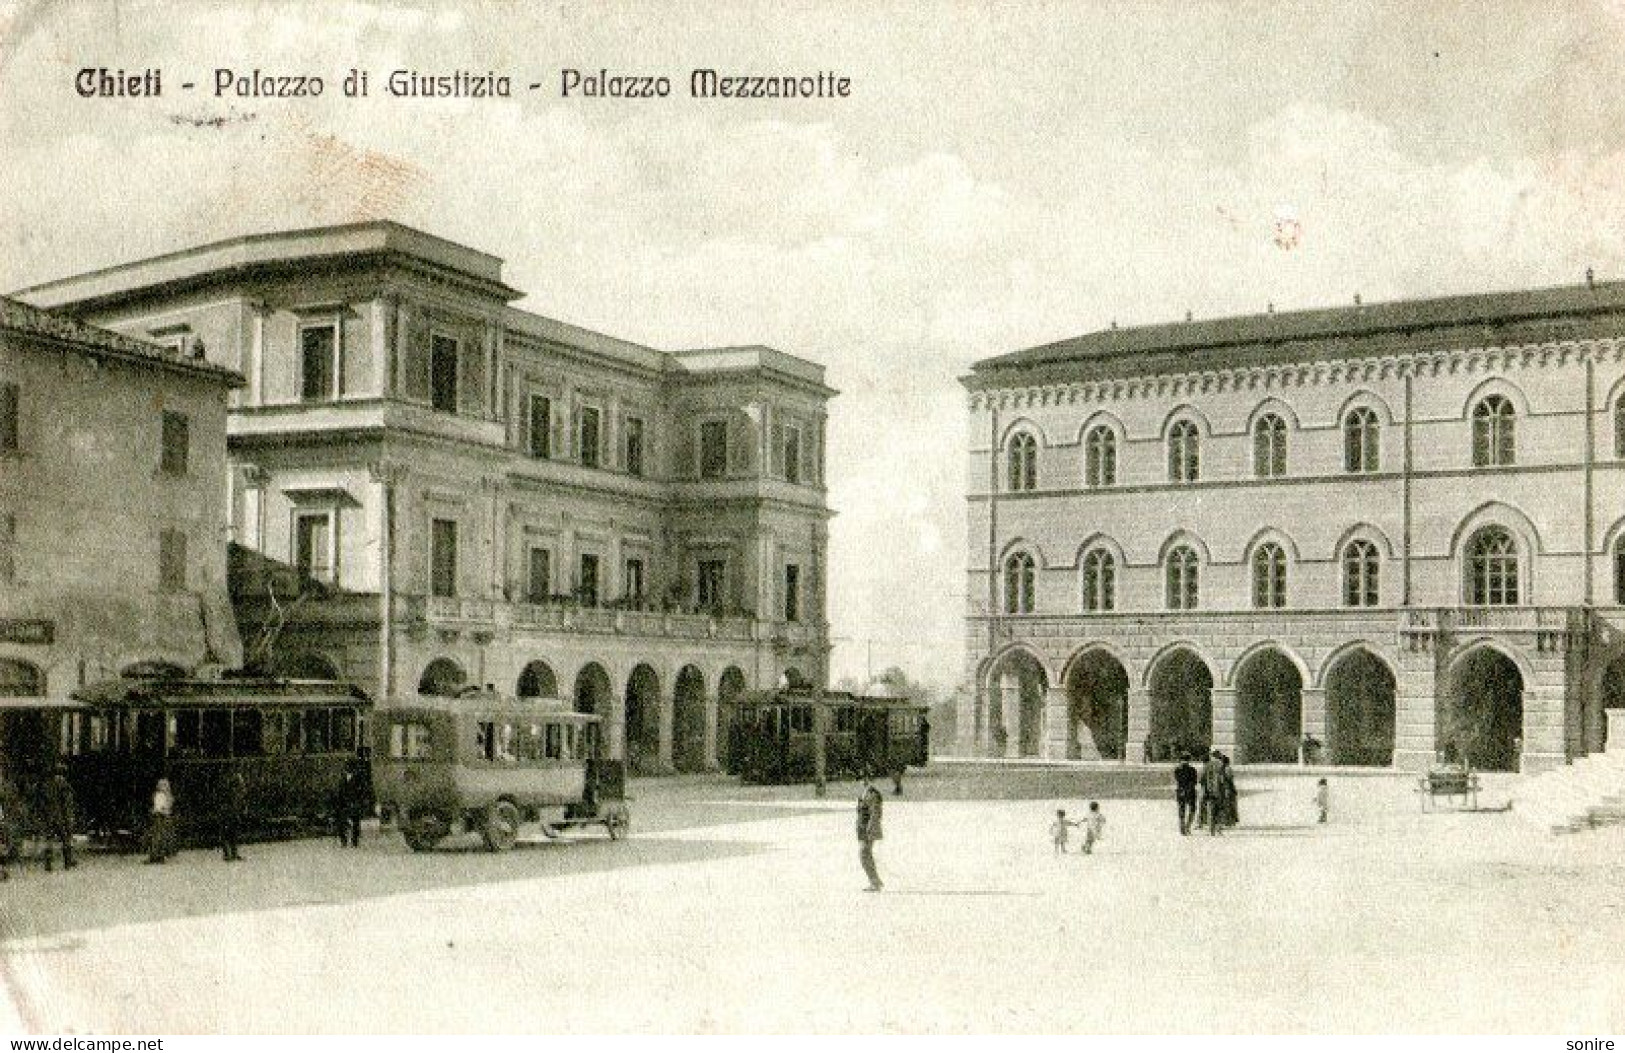 CHIETI - PALAZZO DI GIUSTIZIA - PALAZZO MEZZANOTTE - TRAM FILOBUS - VG 1917 FP - C0371 - Chieti